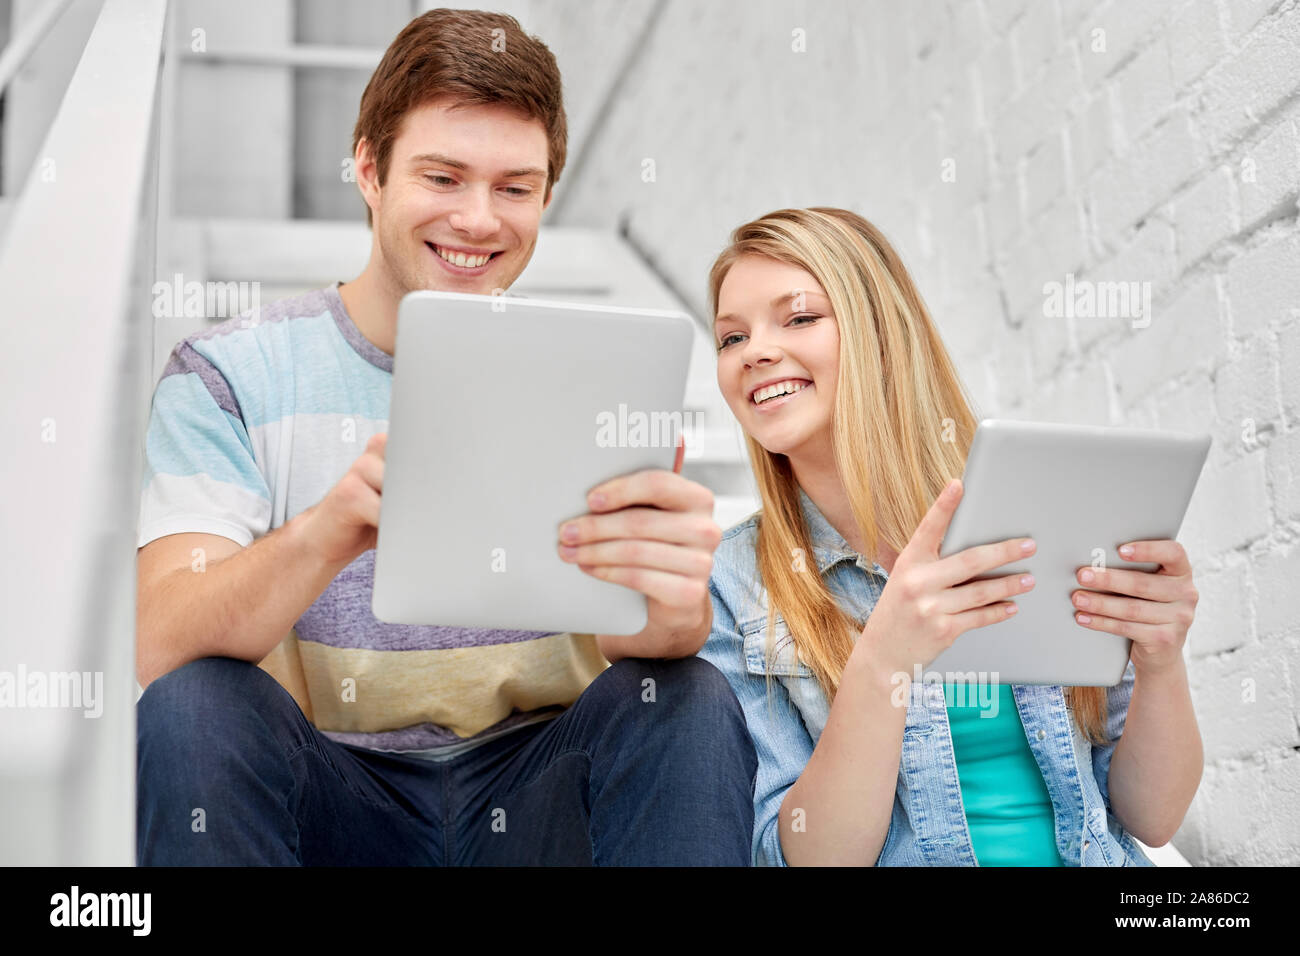 Les élèves du secondaire avec les tablettes électroniques Banque D'Images